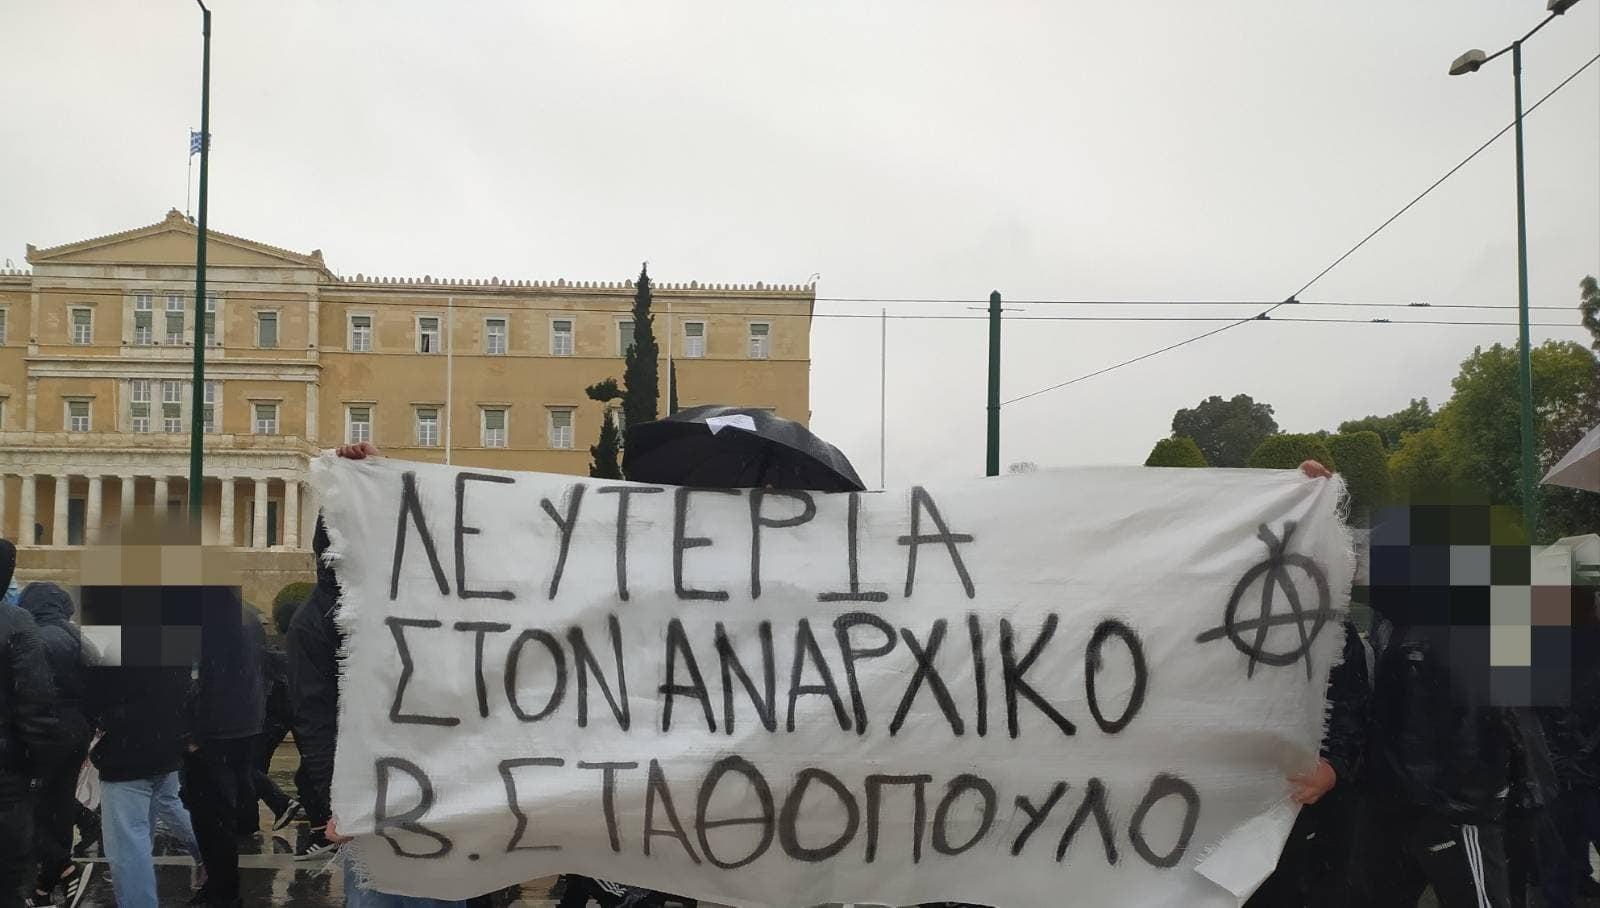 [Αθήνα] Κάλεσμα για μικροφωνική-συγκέντρωση αλληλεγγύης για τον αναρχικό σύντροφο Β.Σταθόπουλο – Συνέλευση αλληλεγγύης στον Β. Σταθόπουλο